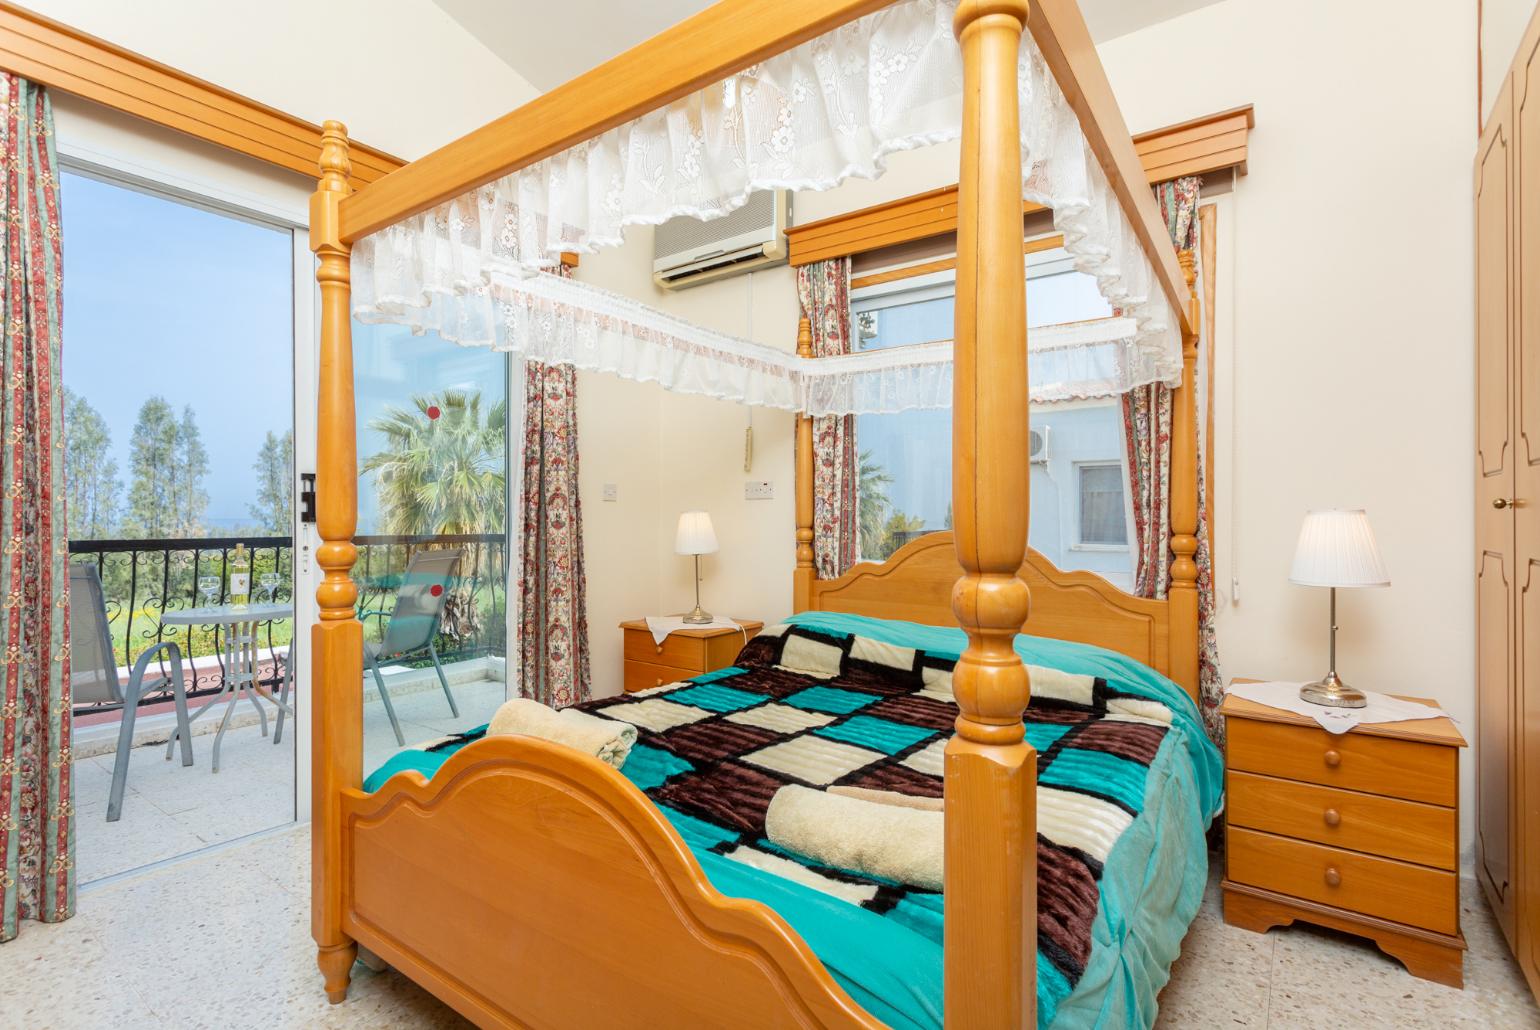 Double bedroom with en suite bathroom, A/C, sea views, and balcony access